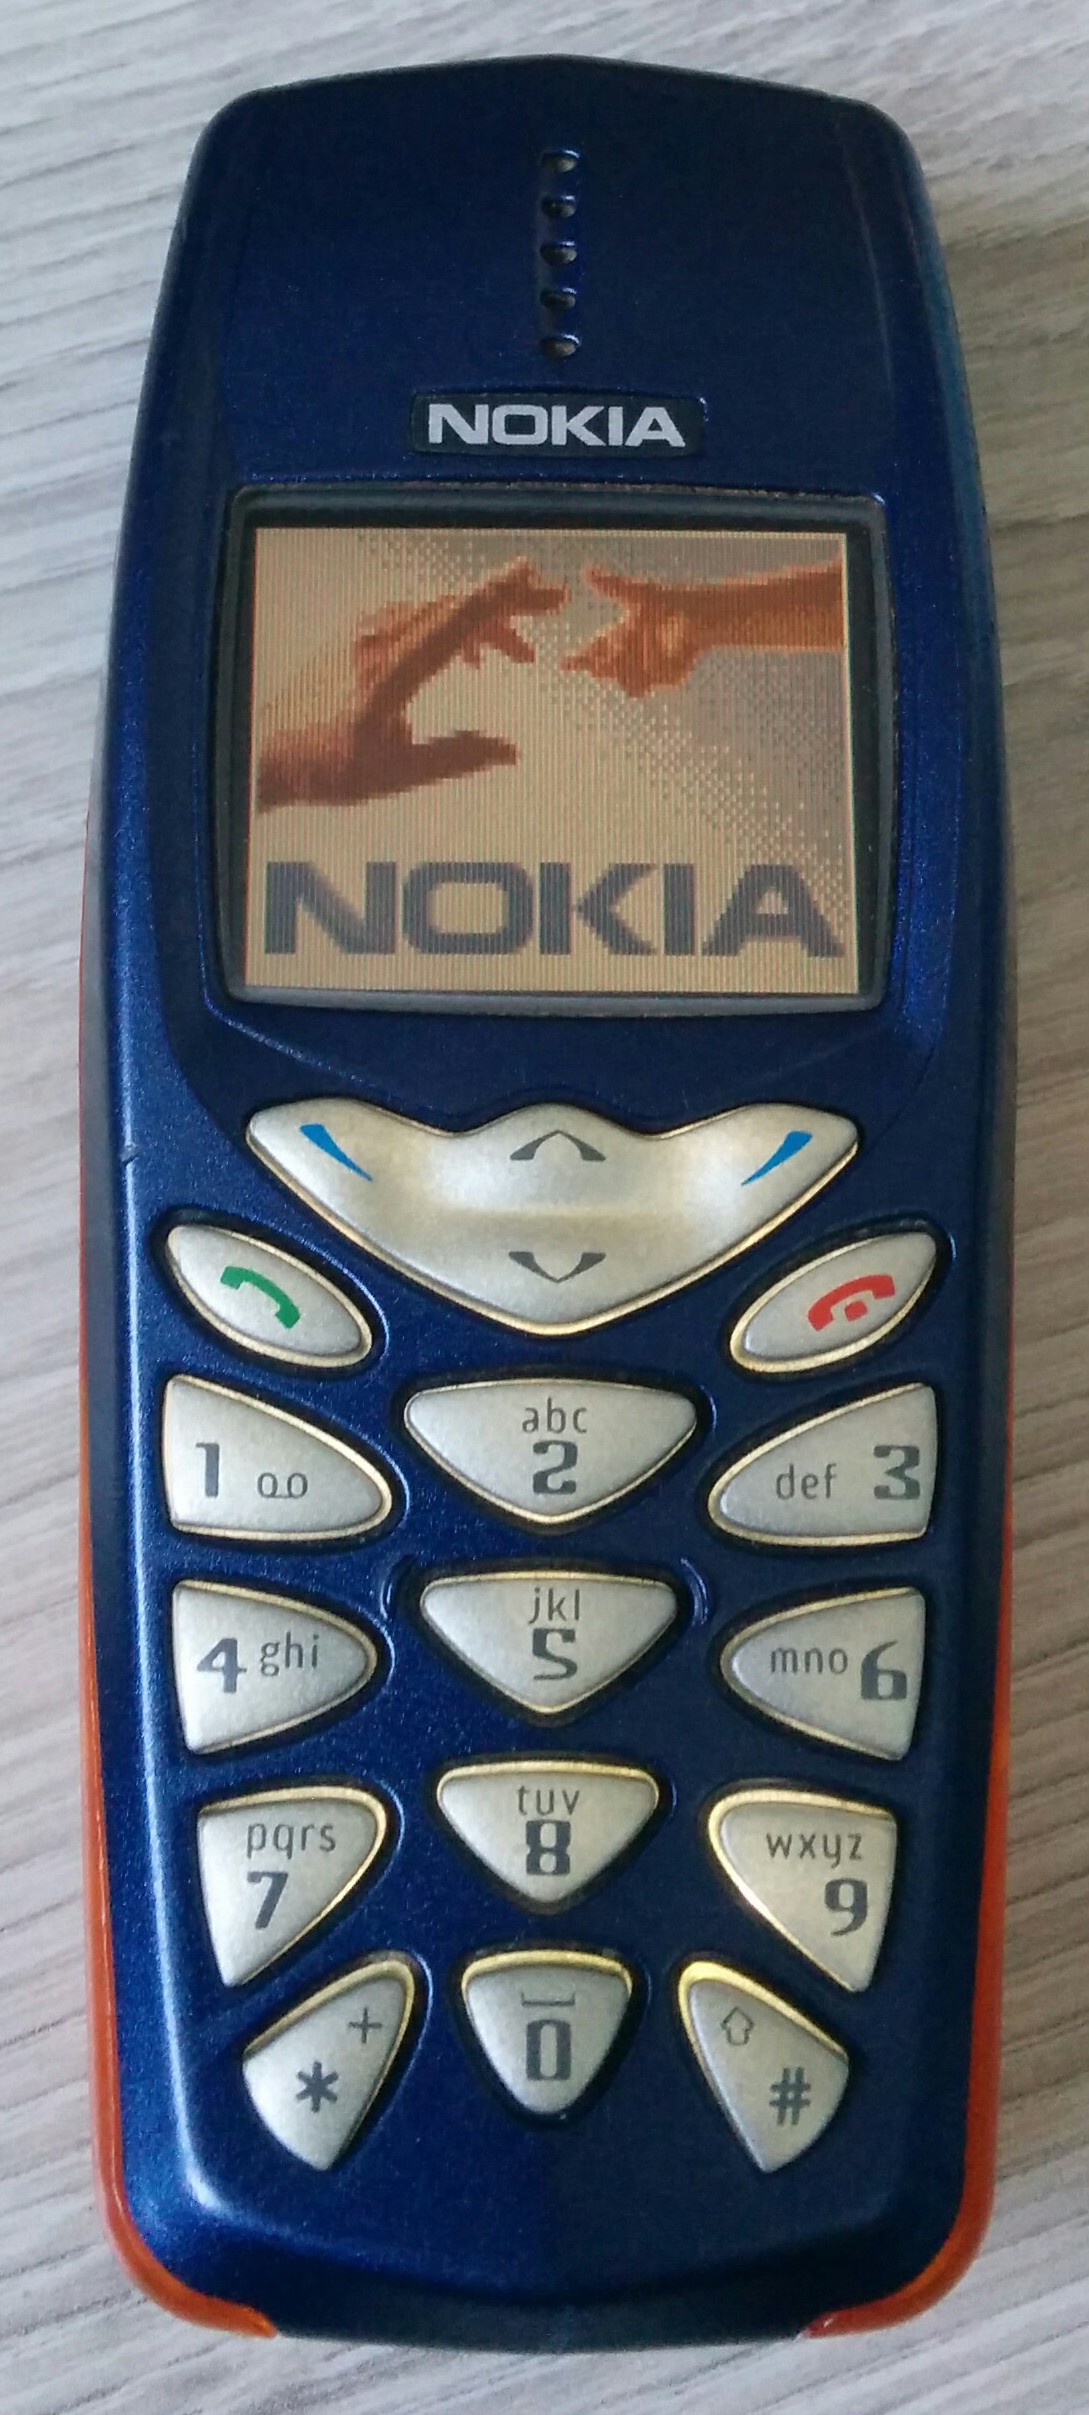 Nokia 3510 - Wikipedia